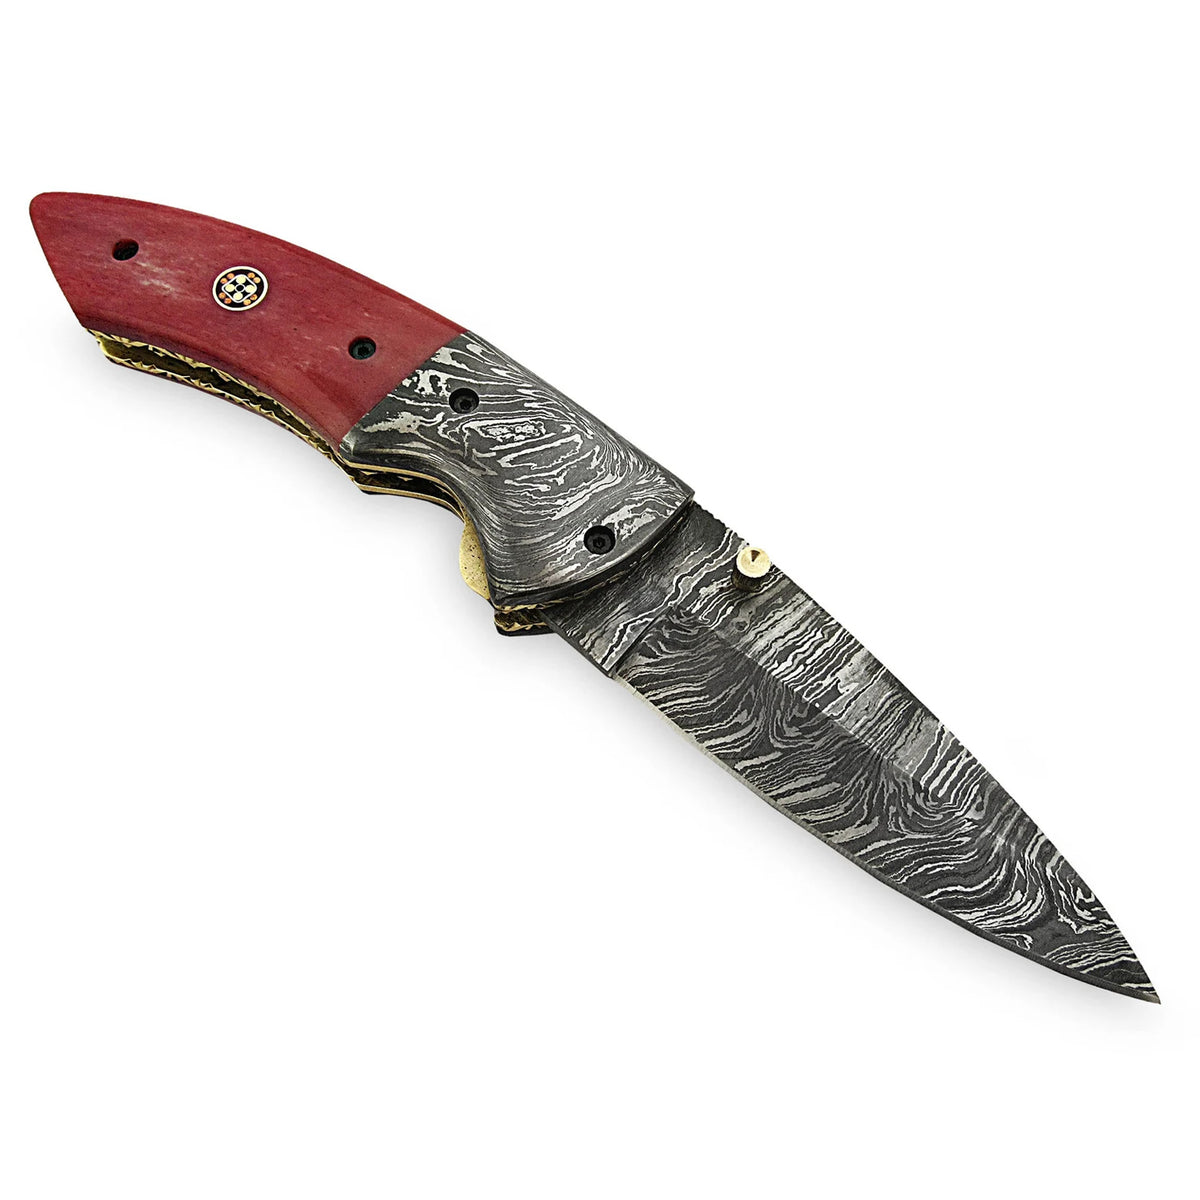 Phanel Damascus Hand Made Steel Hunting Folding Knife - Notbrand